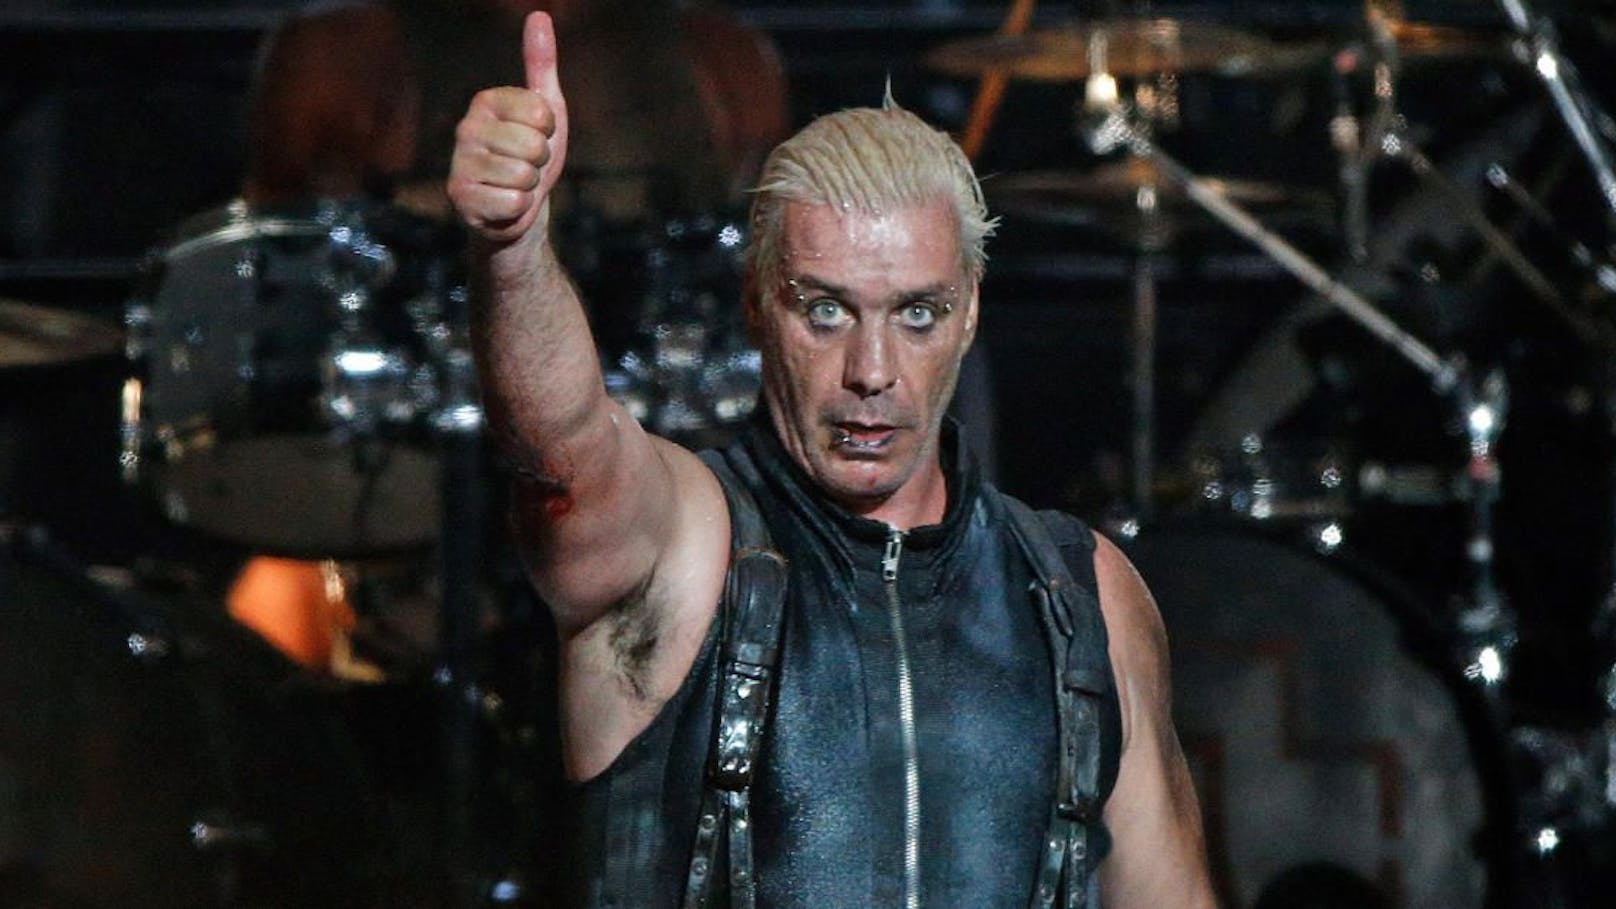 Rammstein-Sänger Till Lindemann